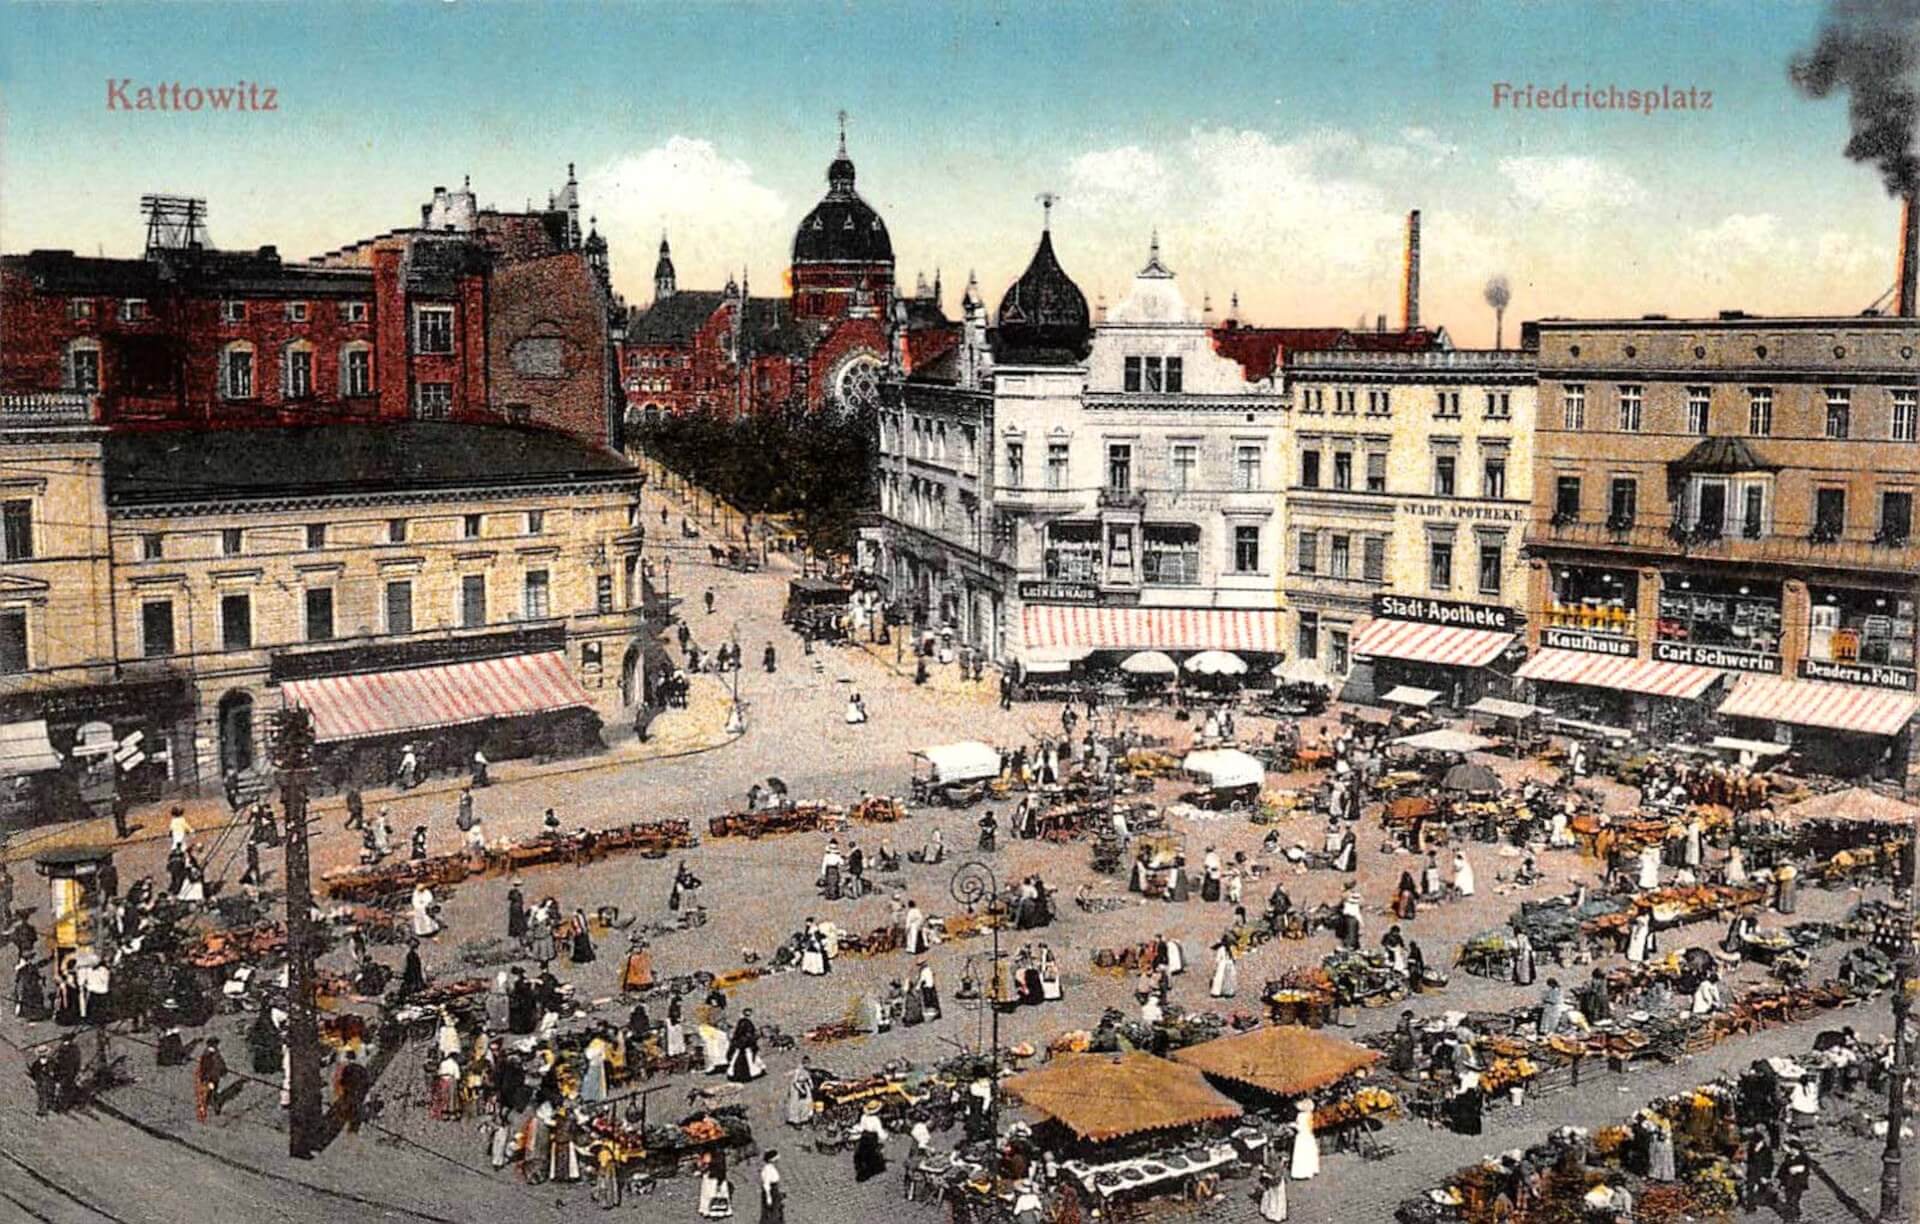 Rynek w Katowicach w XX wieku